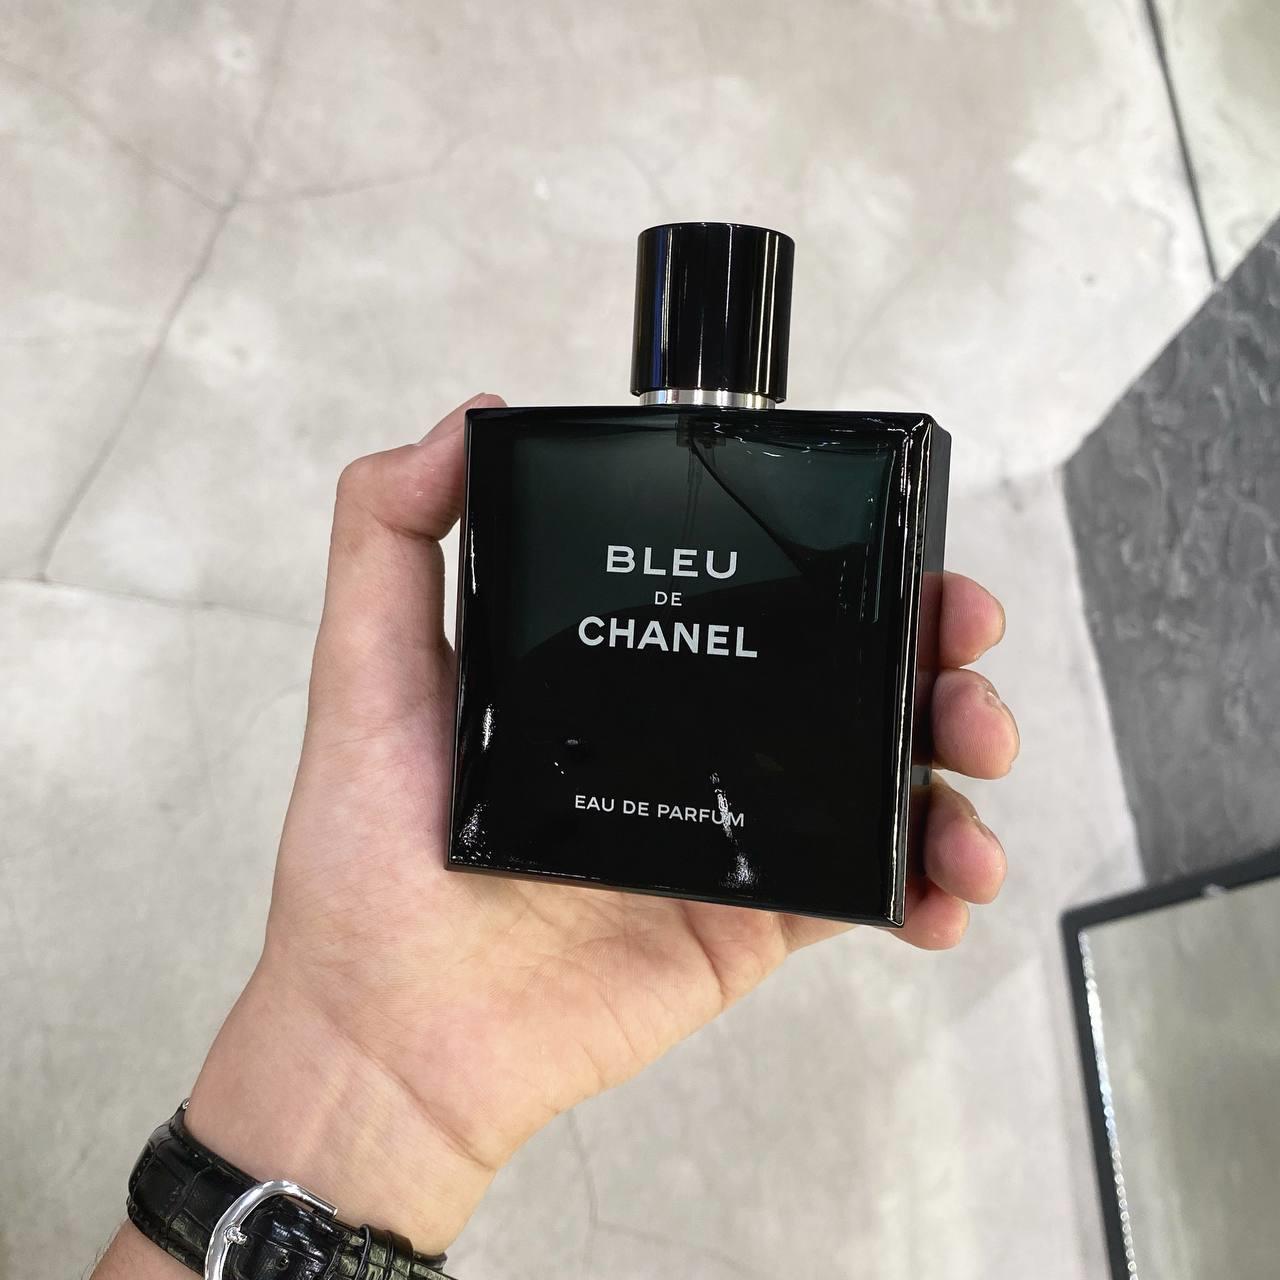 Nước hoa nam Chanel Bleu EDT 100ml chính hãng Pháp  PN22542